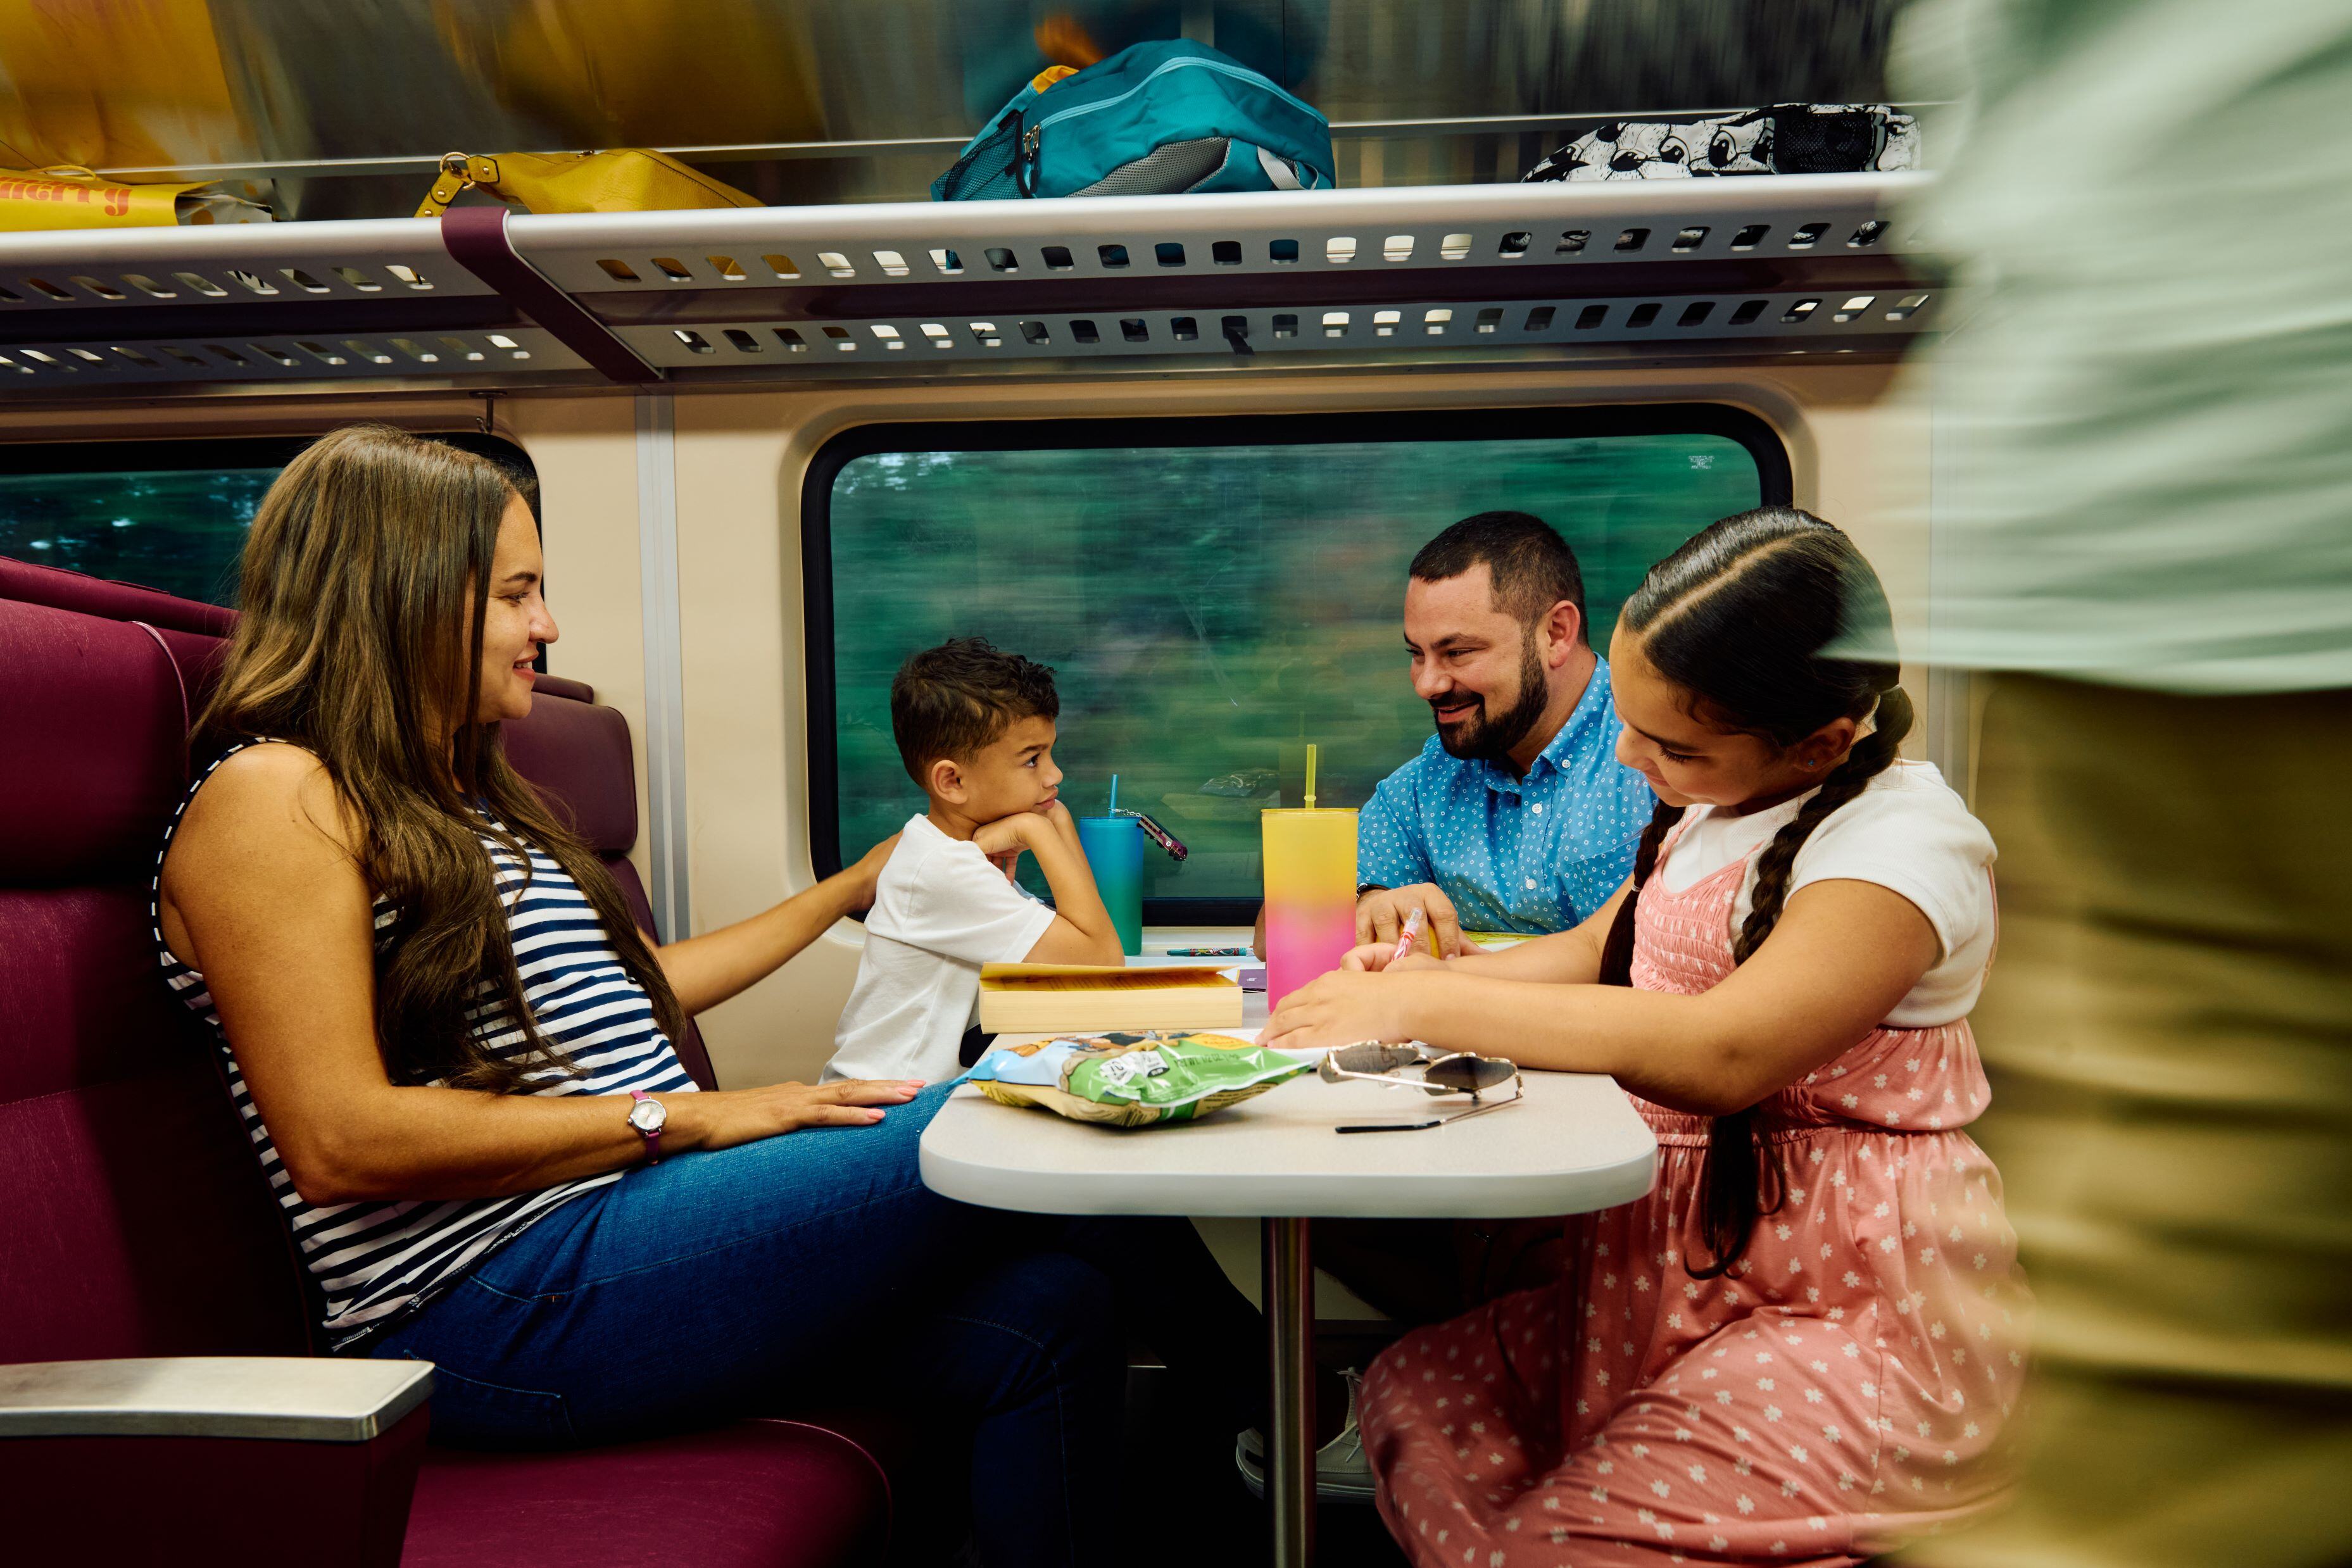 A family rides a commuter rail train